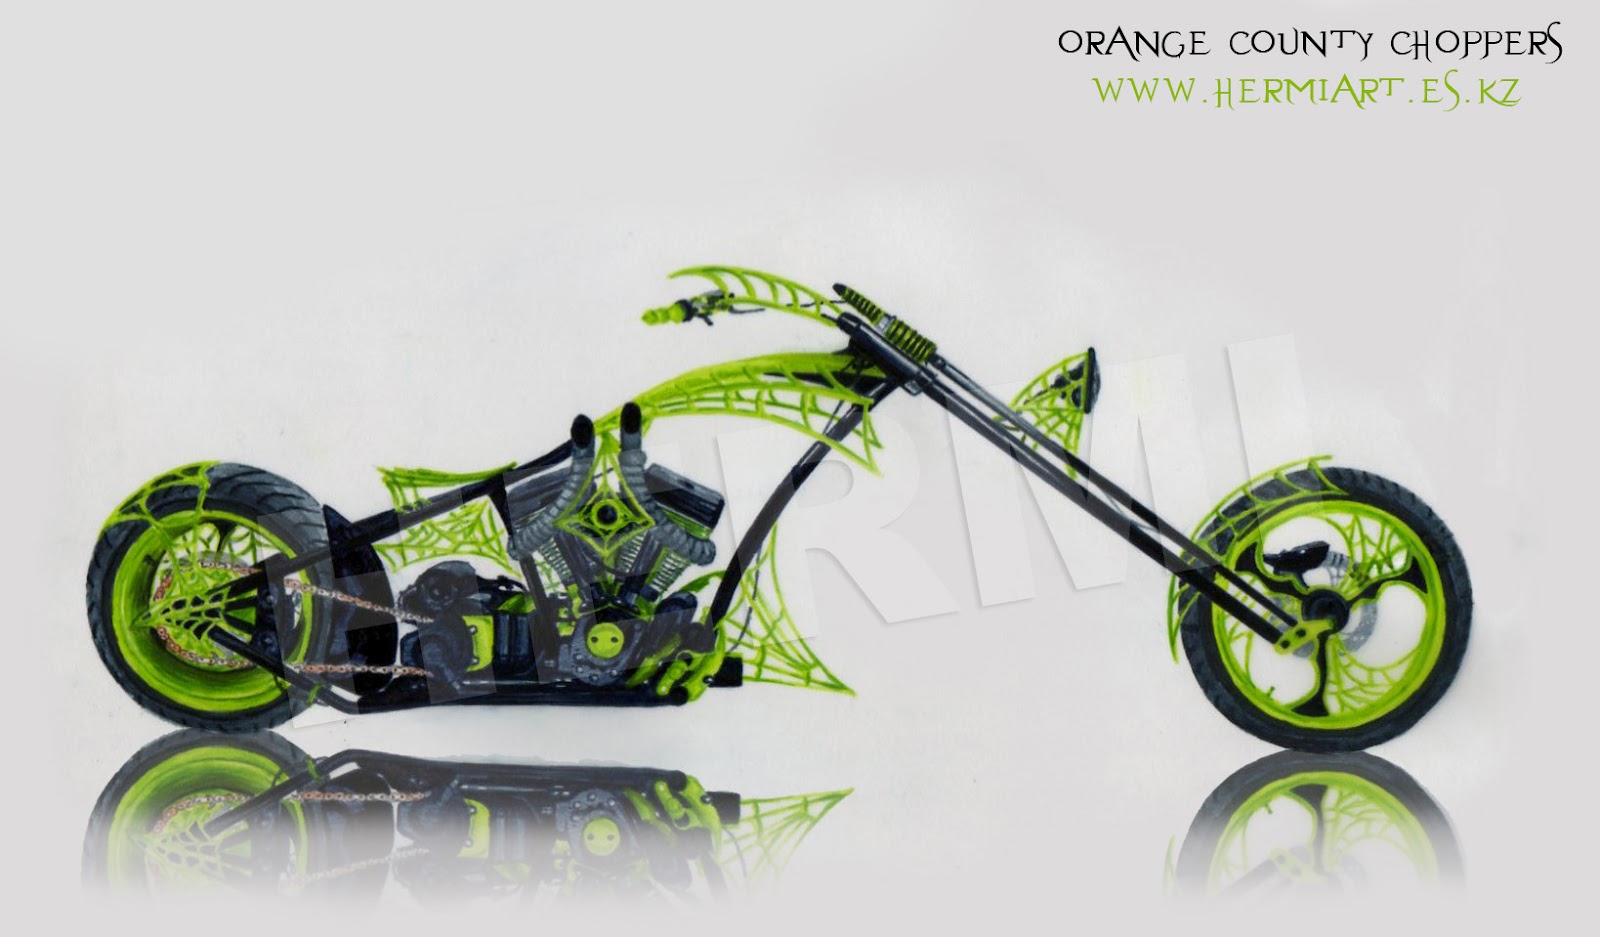 Orange County Choppers Bikes